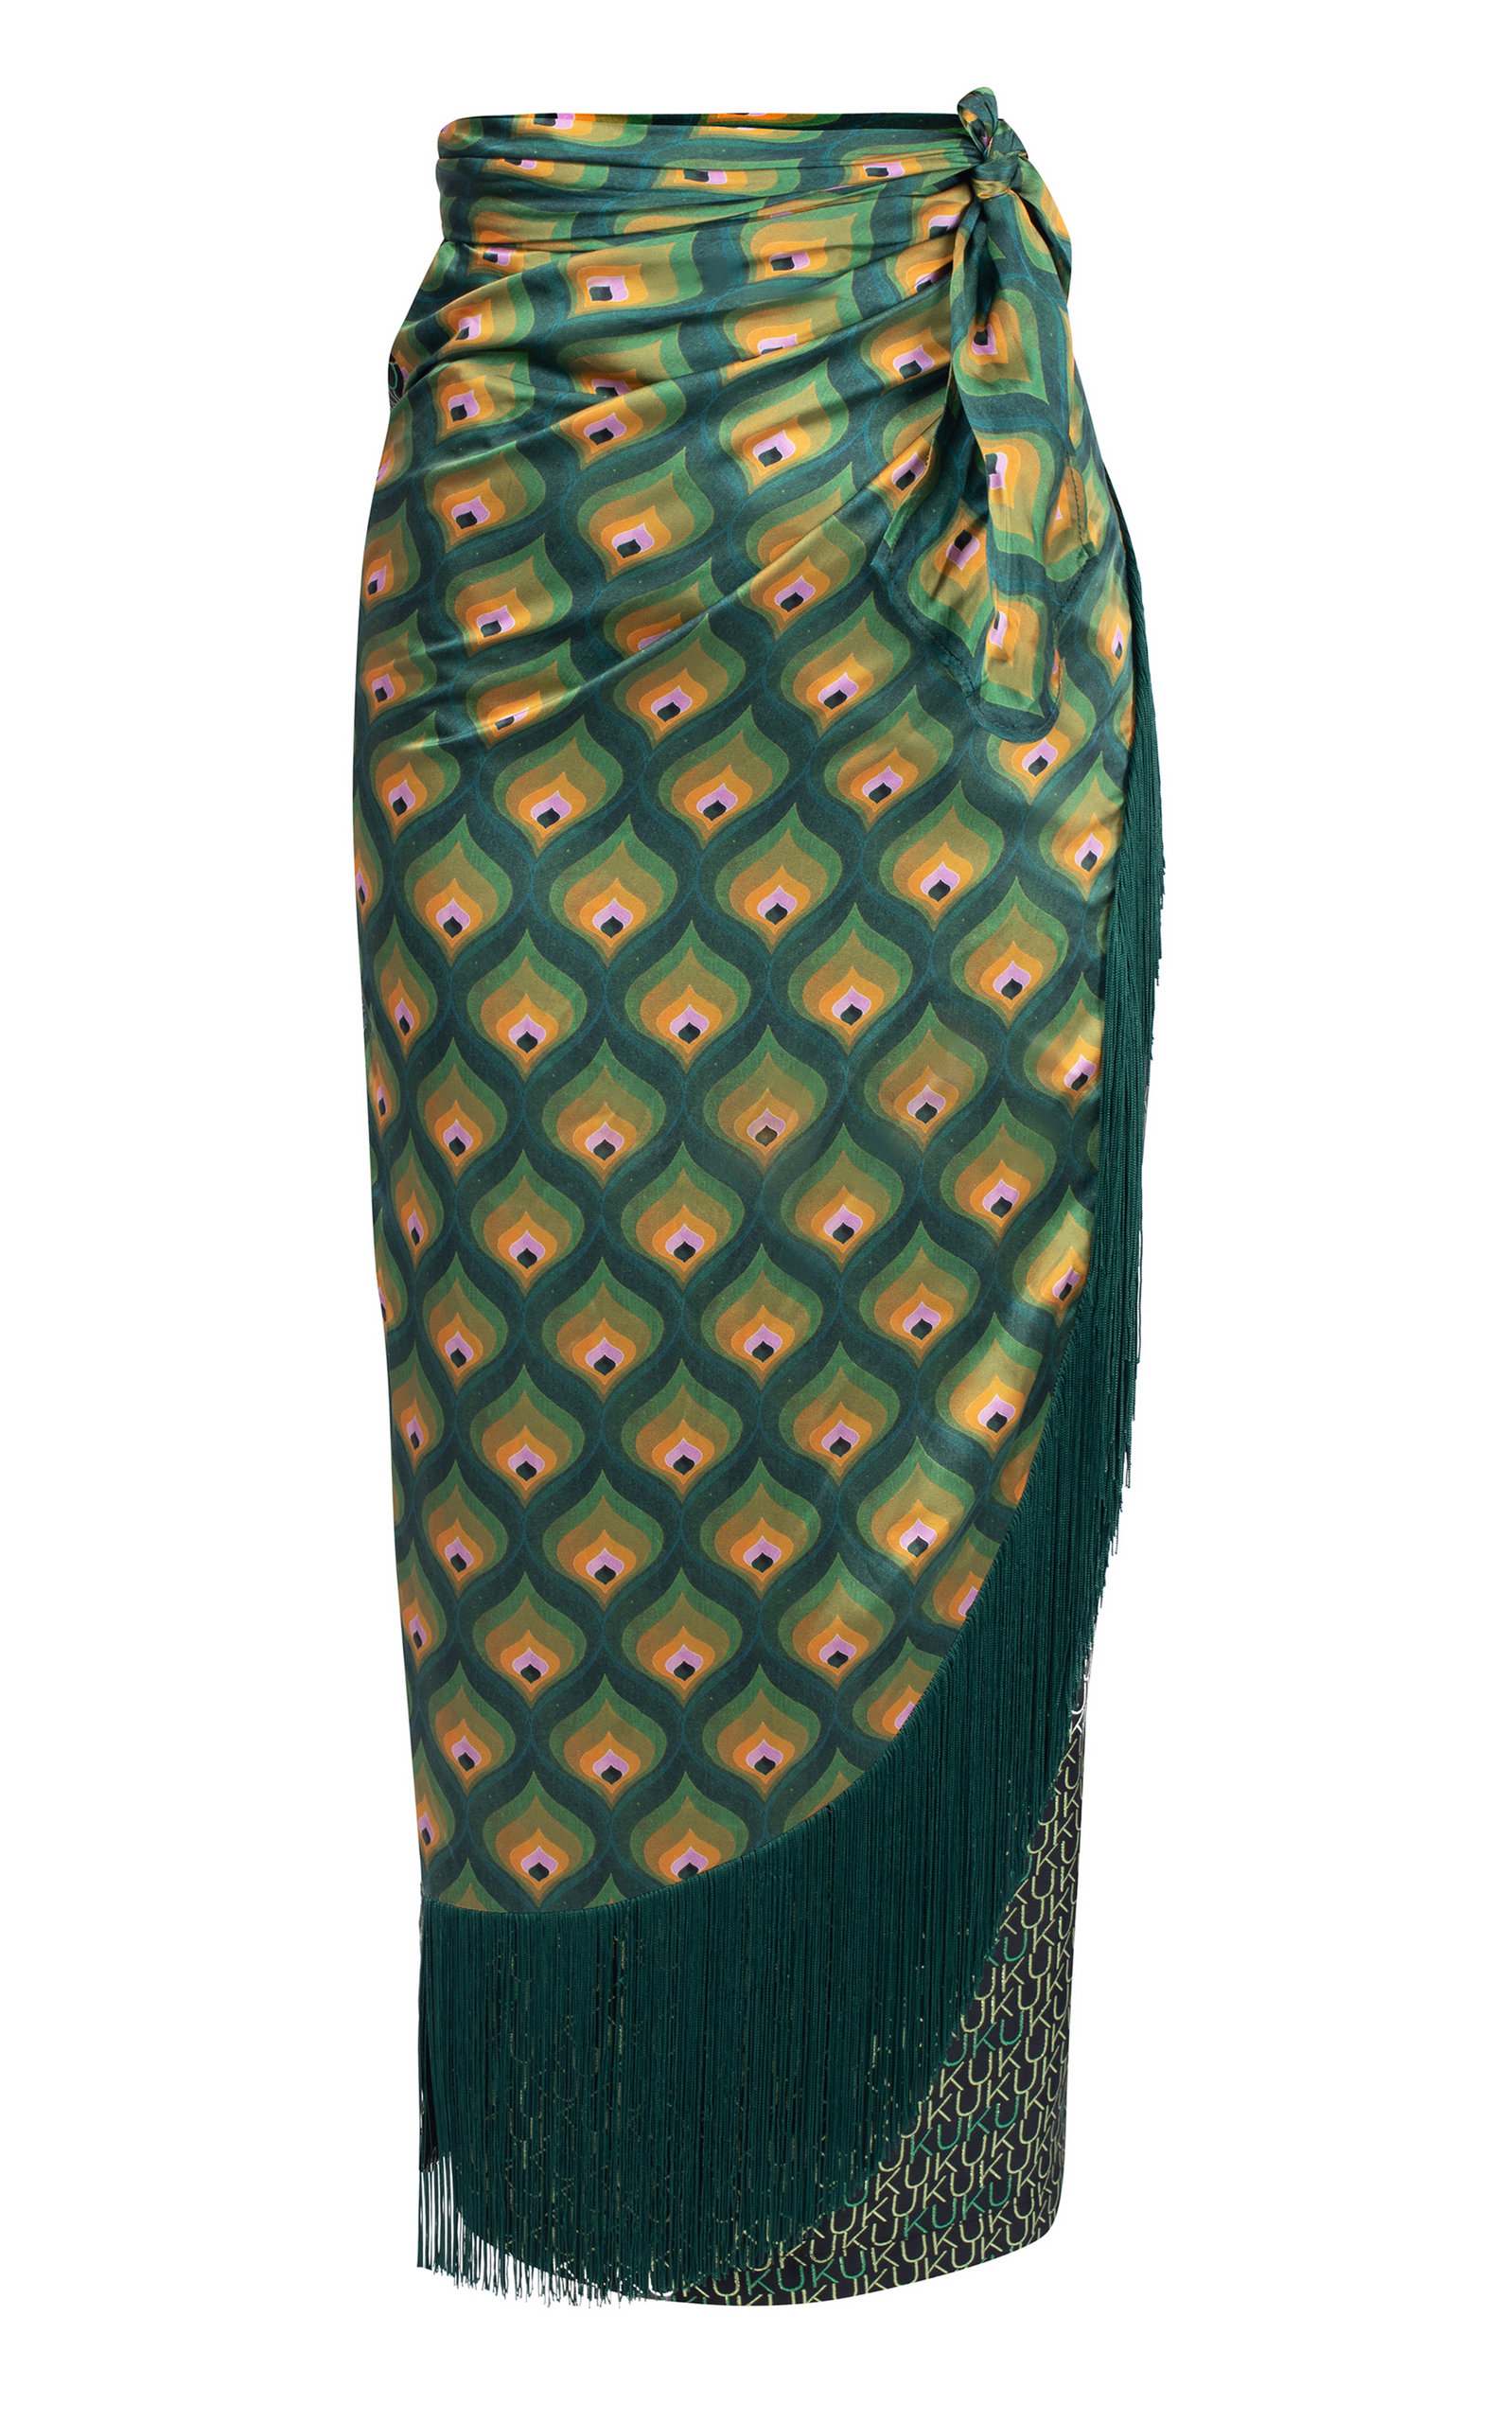 Banke Kuku - Women's Fringed Mixed-Knit Jacquard Midi Skirt - Green - Only At Moda Operandi